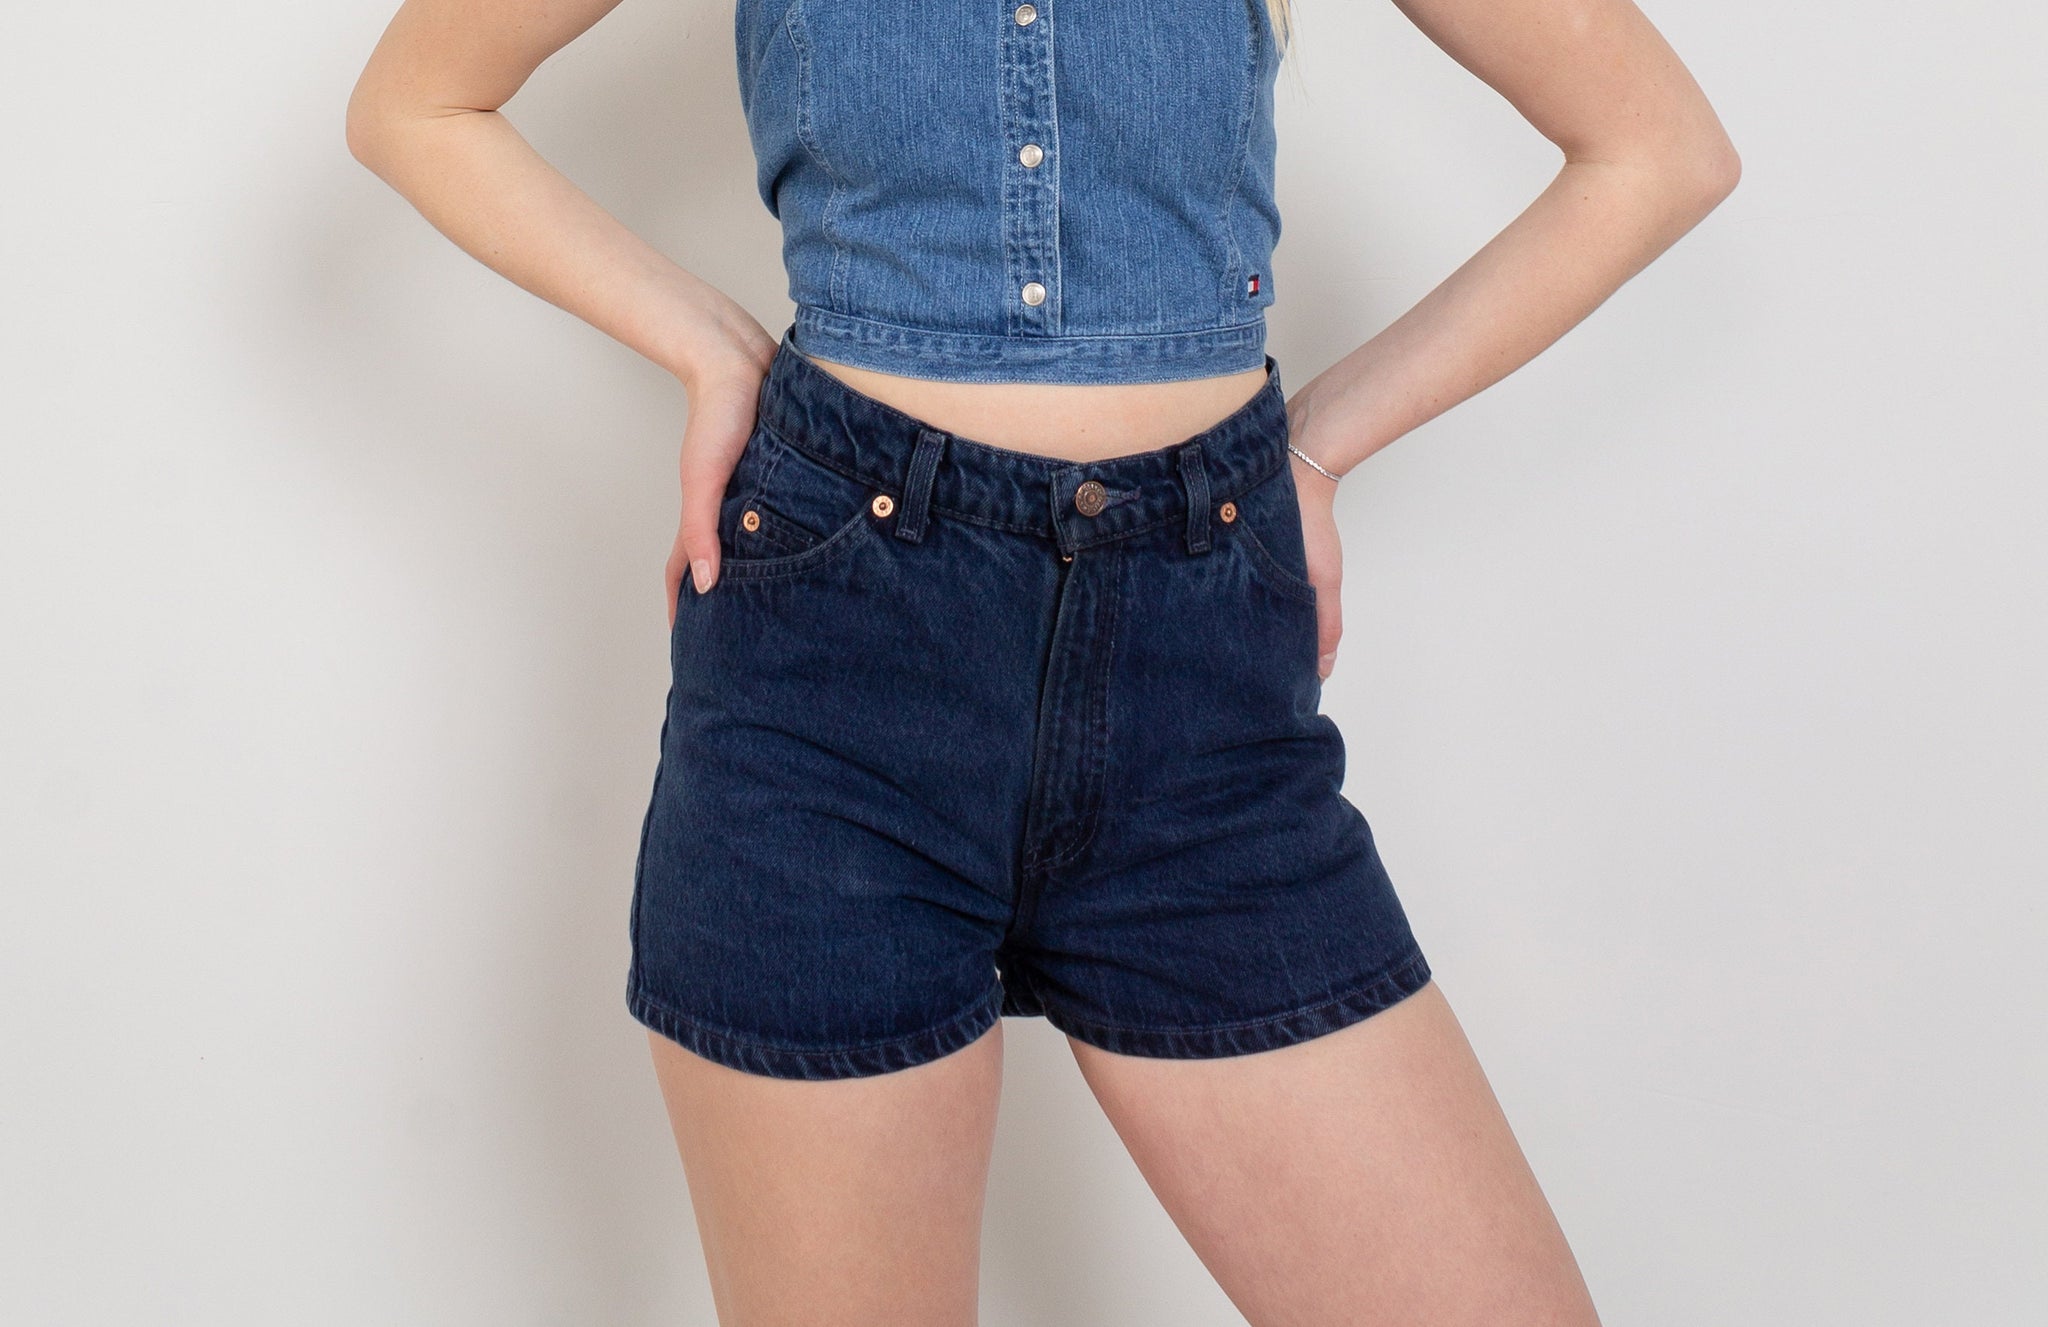 Vintage Levi's Denim Shorts For Women – Better Stay Together